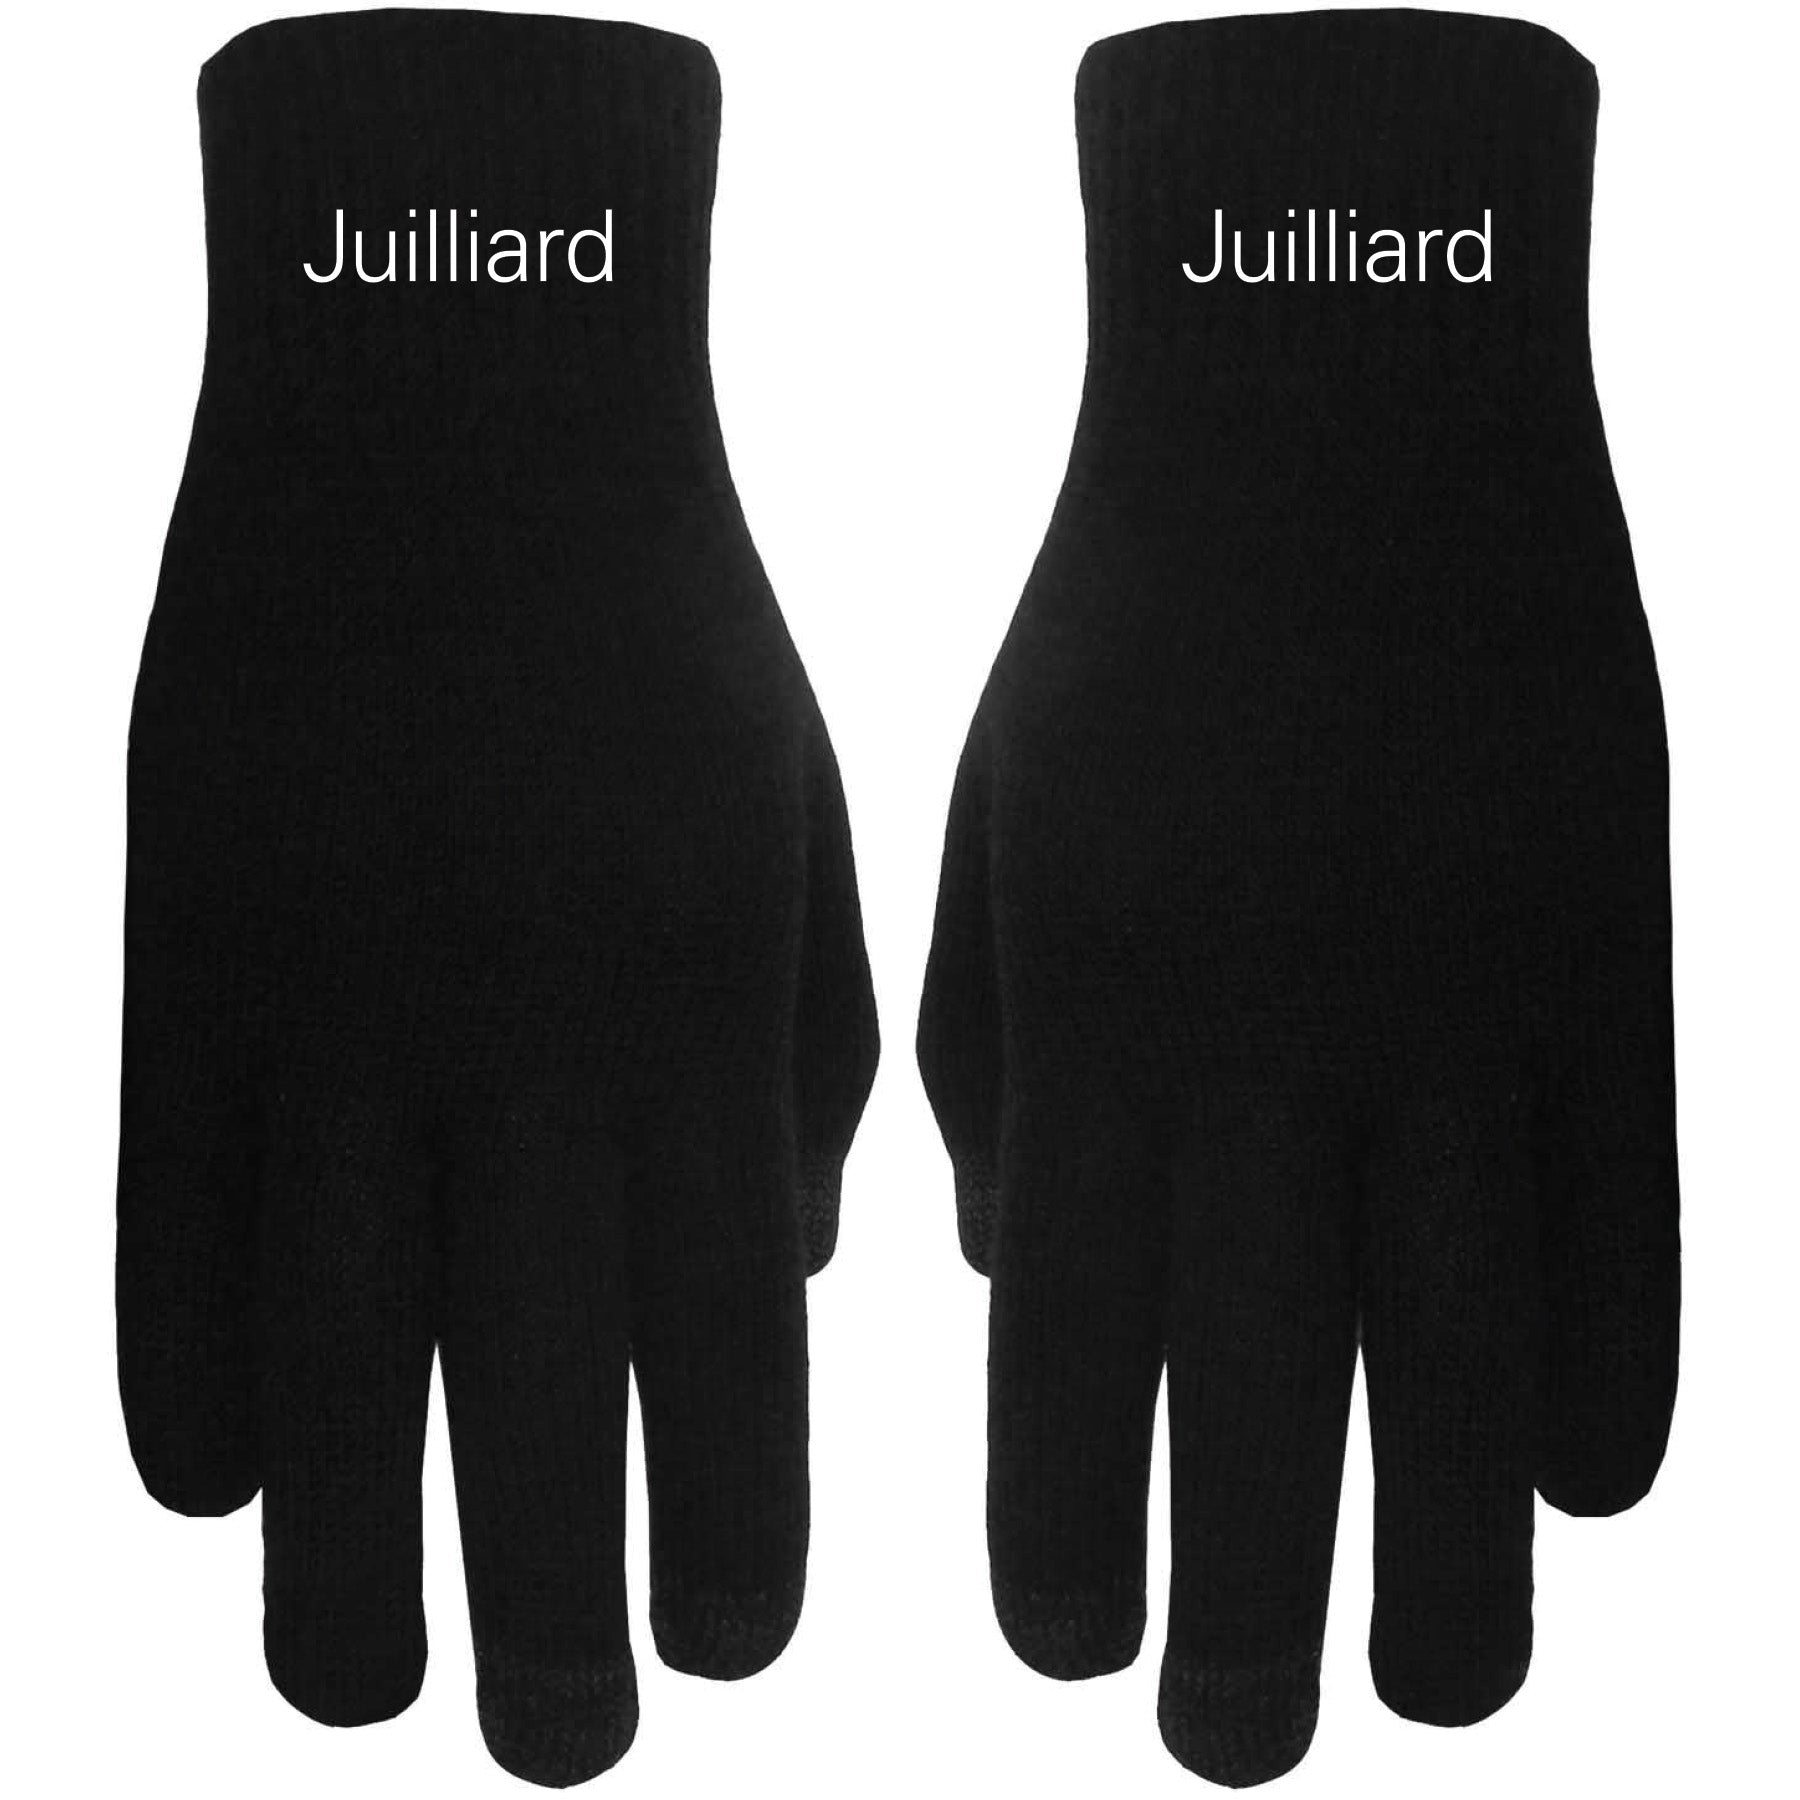 Gloves: Juilliard Touchscreen Black with white logo